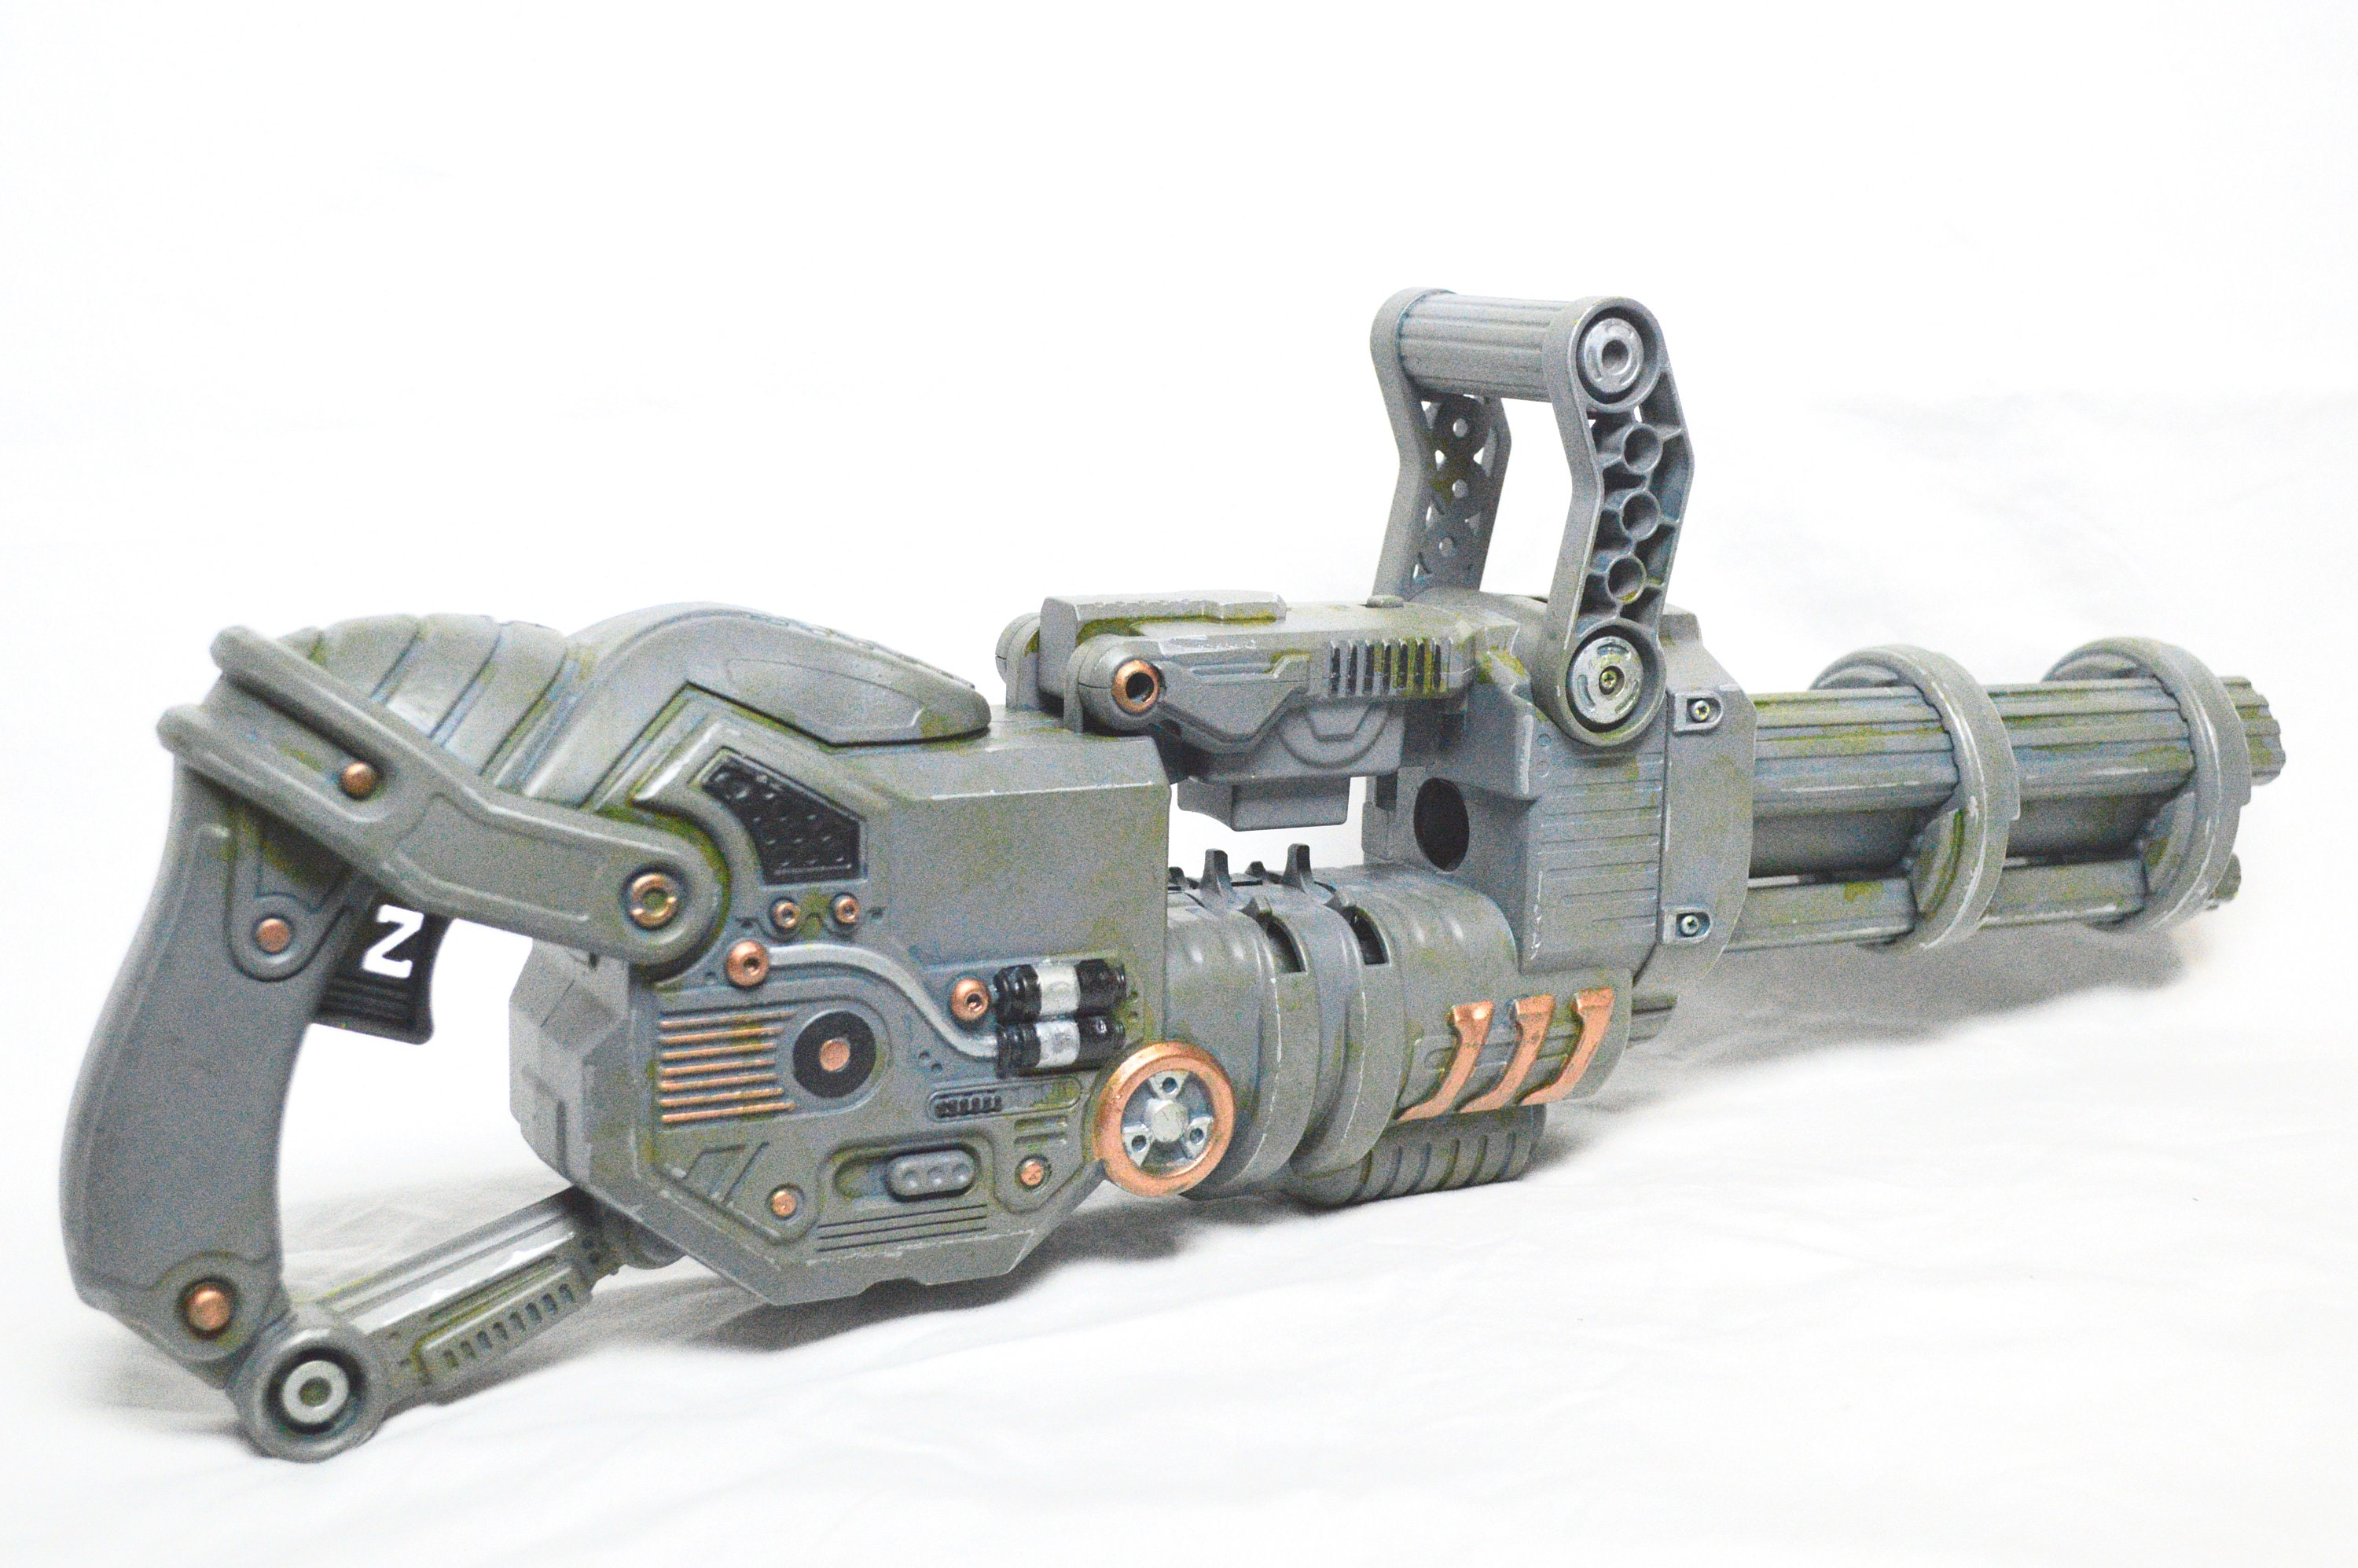 Et centralt værktøj, der spiller en vigtig rolle Link retort Nerf Minigun - Etsy